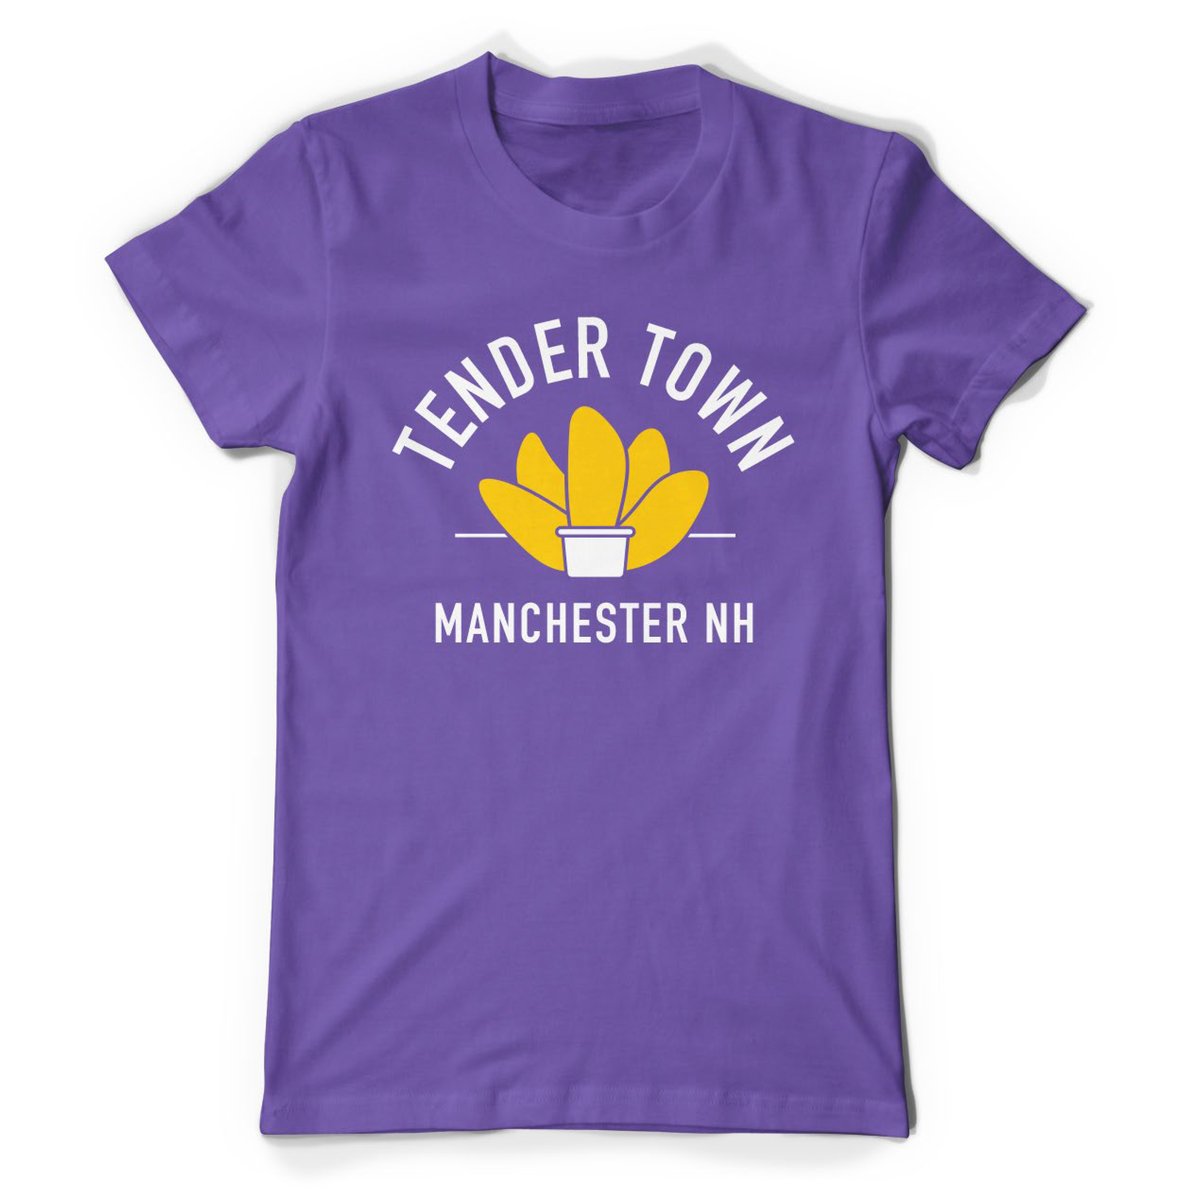 Tender Town T-Shirt